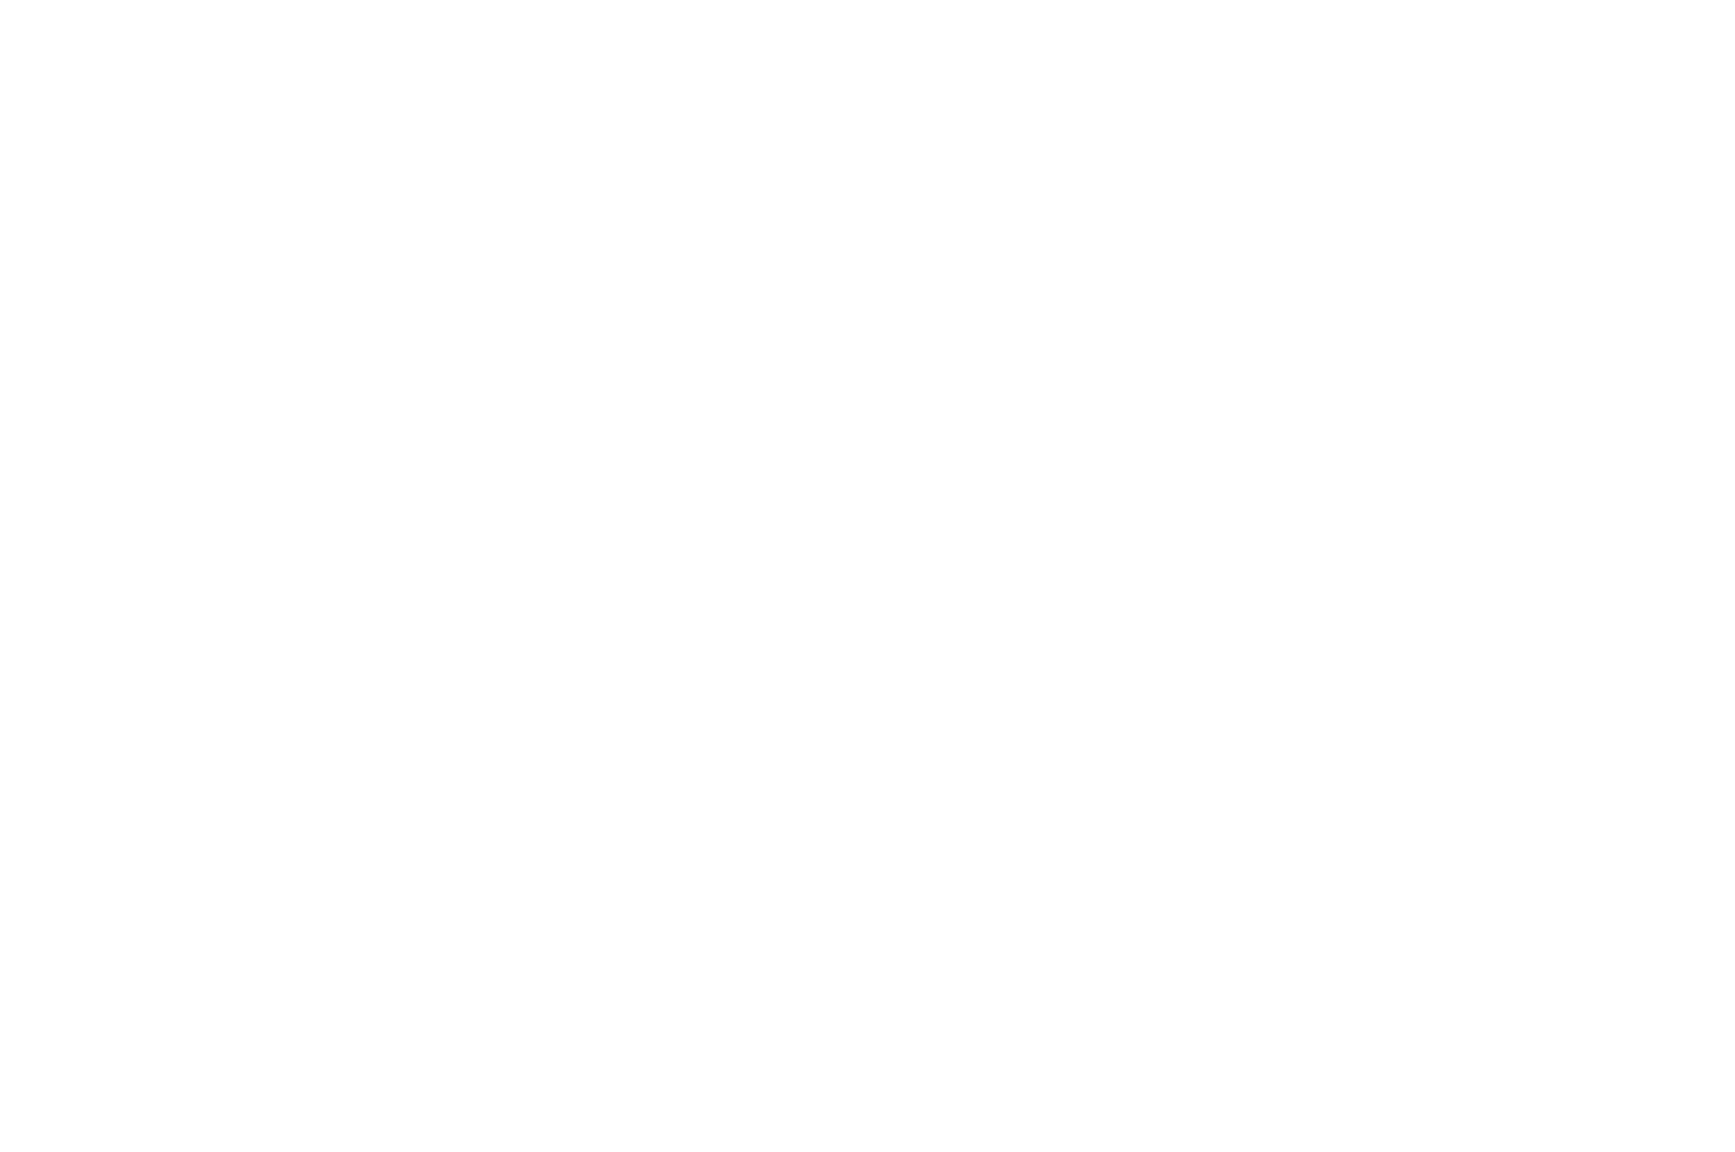 WINNER - World Film Carnival - Singapore - 2022